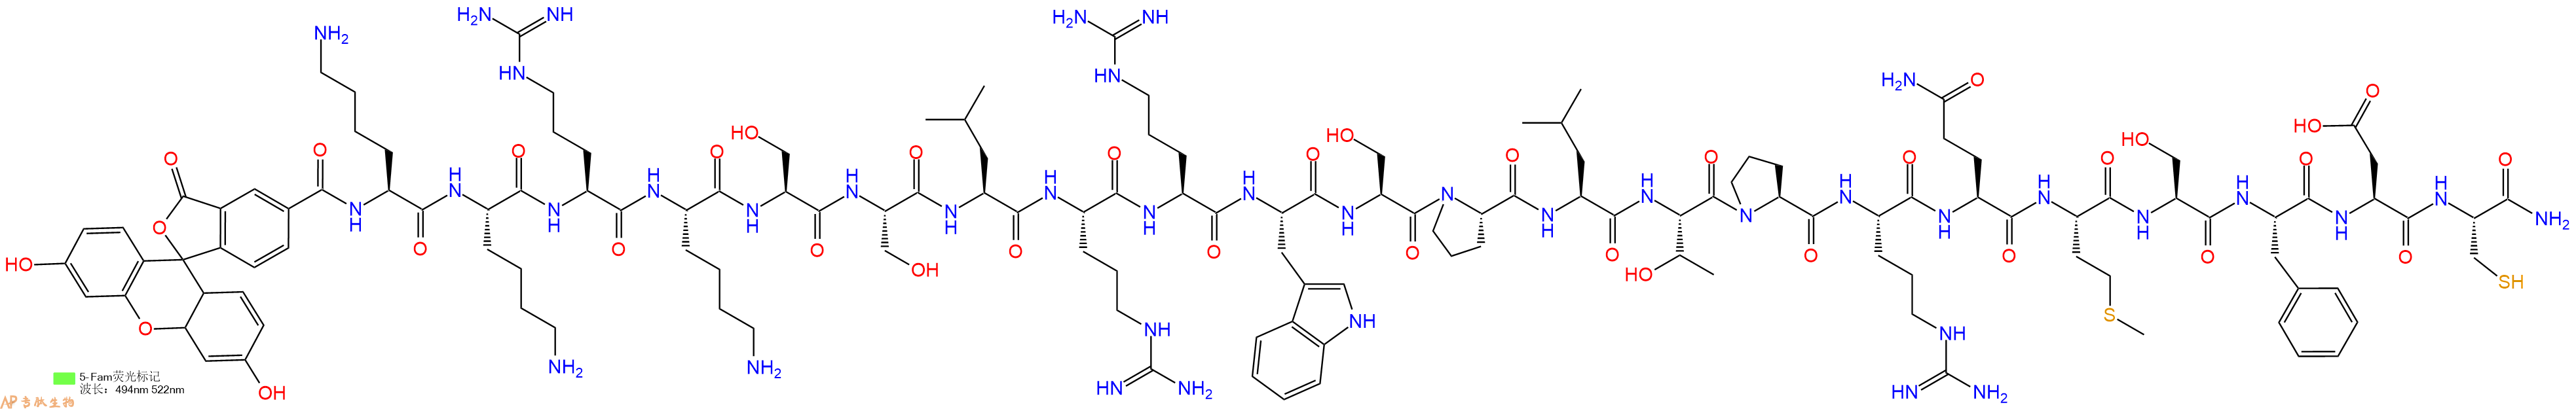 专肽生物产品荧光标记肽5FAM-KKRKSSLRRWSPLTPRQMSFDC-NH2